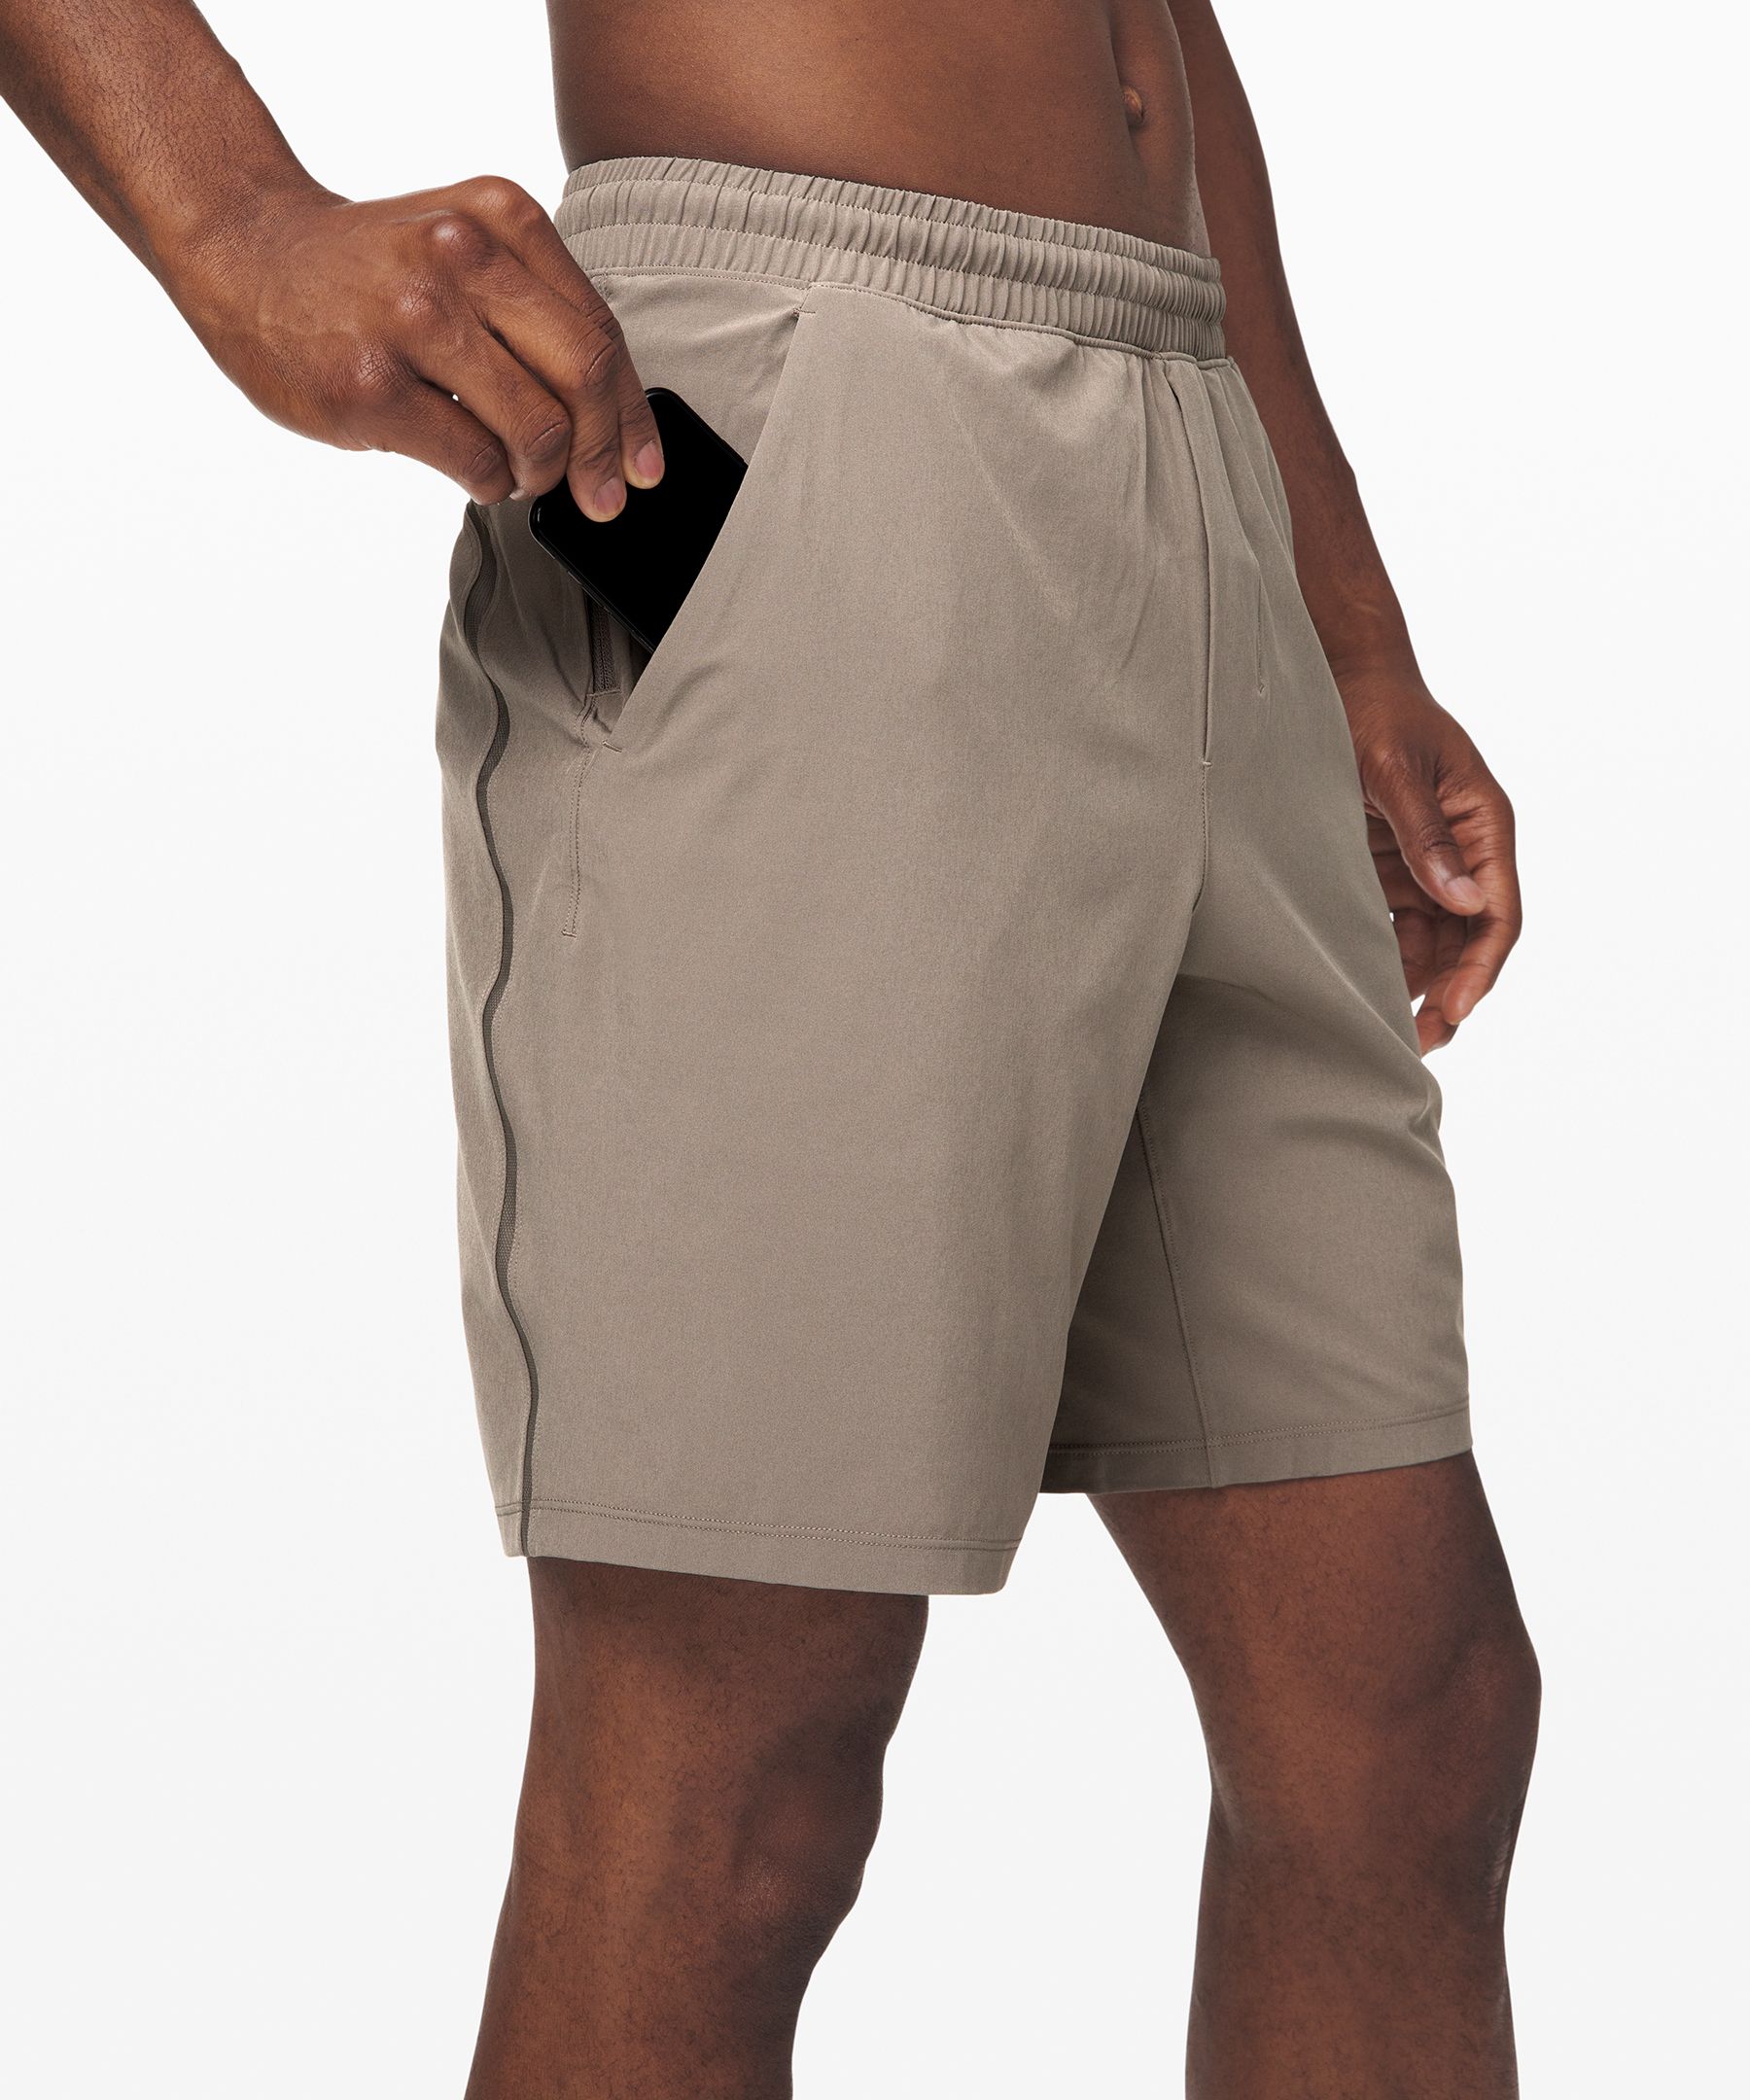 lululemon shorts men's